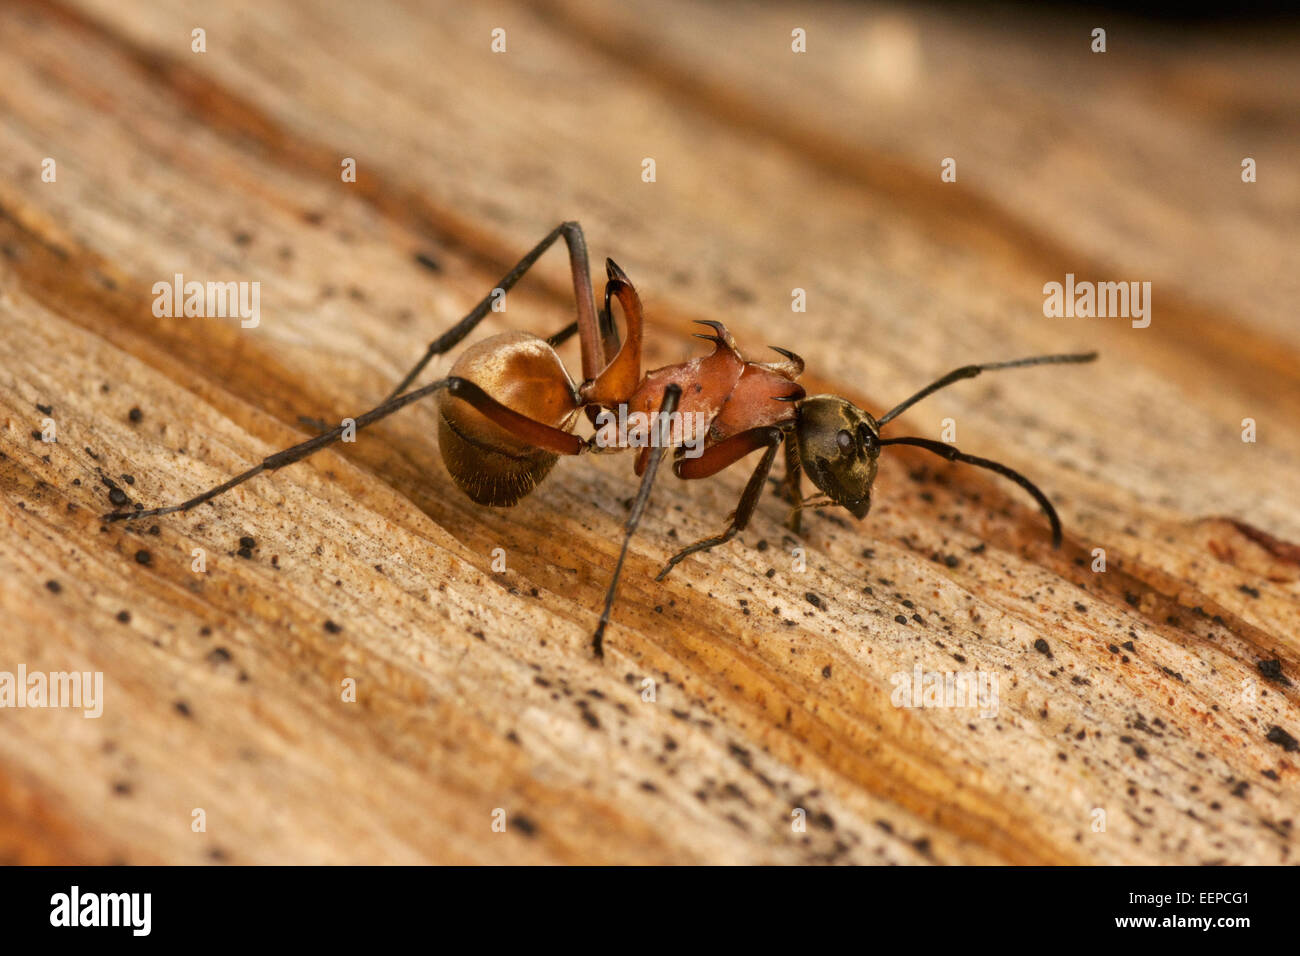 Ameisen SP. Ant zeigt Schutz Dornen/Stacheln, das Insekt von der Fütterung der Raubtiere zu schützen. Stockfoto